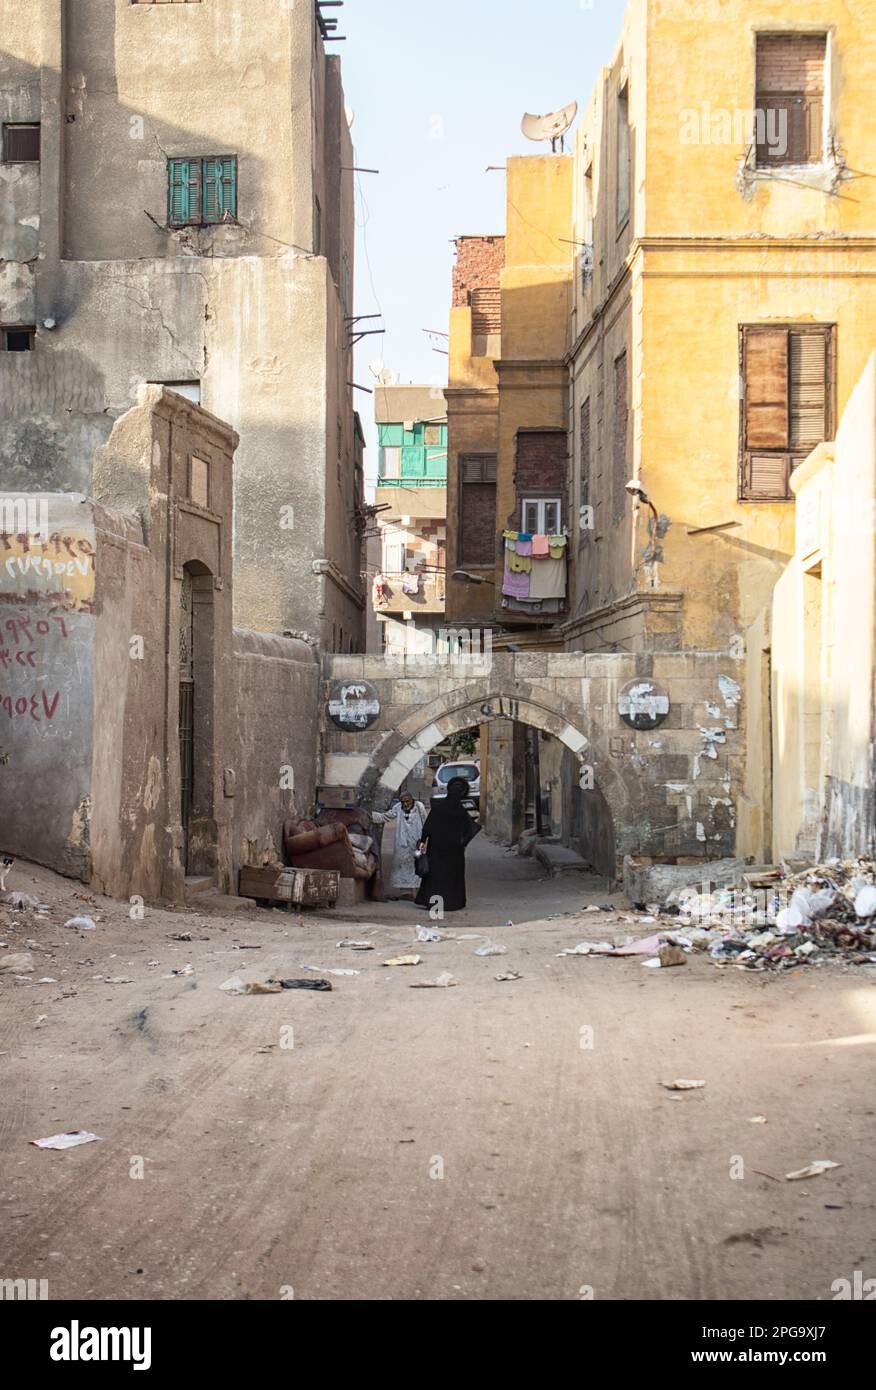 La ruta de salida de la ciudad de los muertos. La Ciudad de los Muertos, o Necrópolis de El Cairo, también conocida como el Qarafa es una serie de vastas necrópolis y cementerios de la era islámica en El Cairo, Egipto. Foto de stock